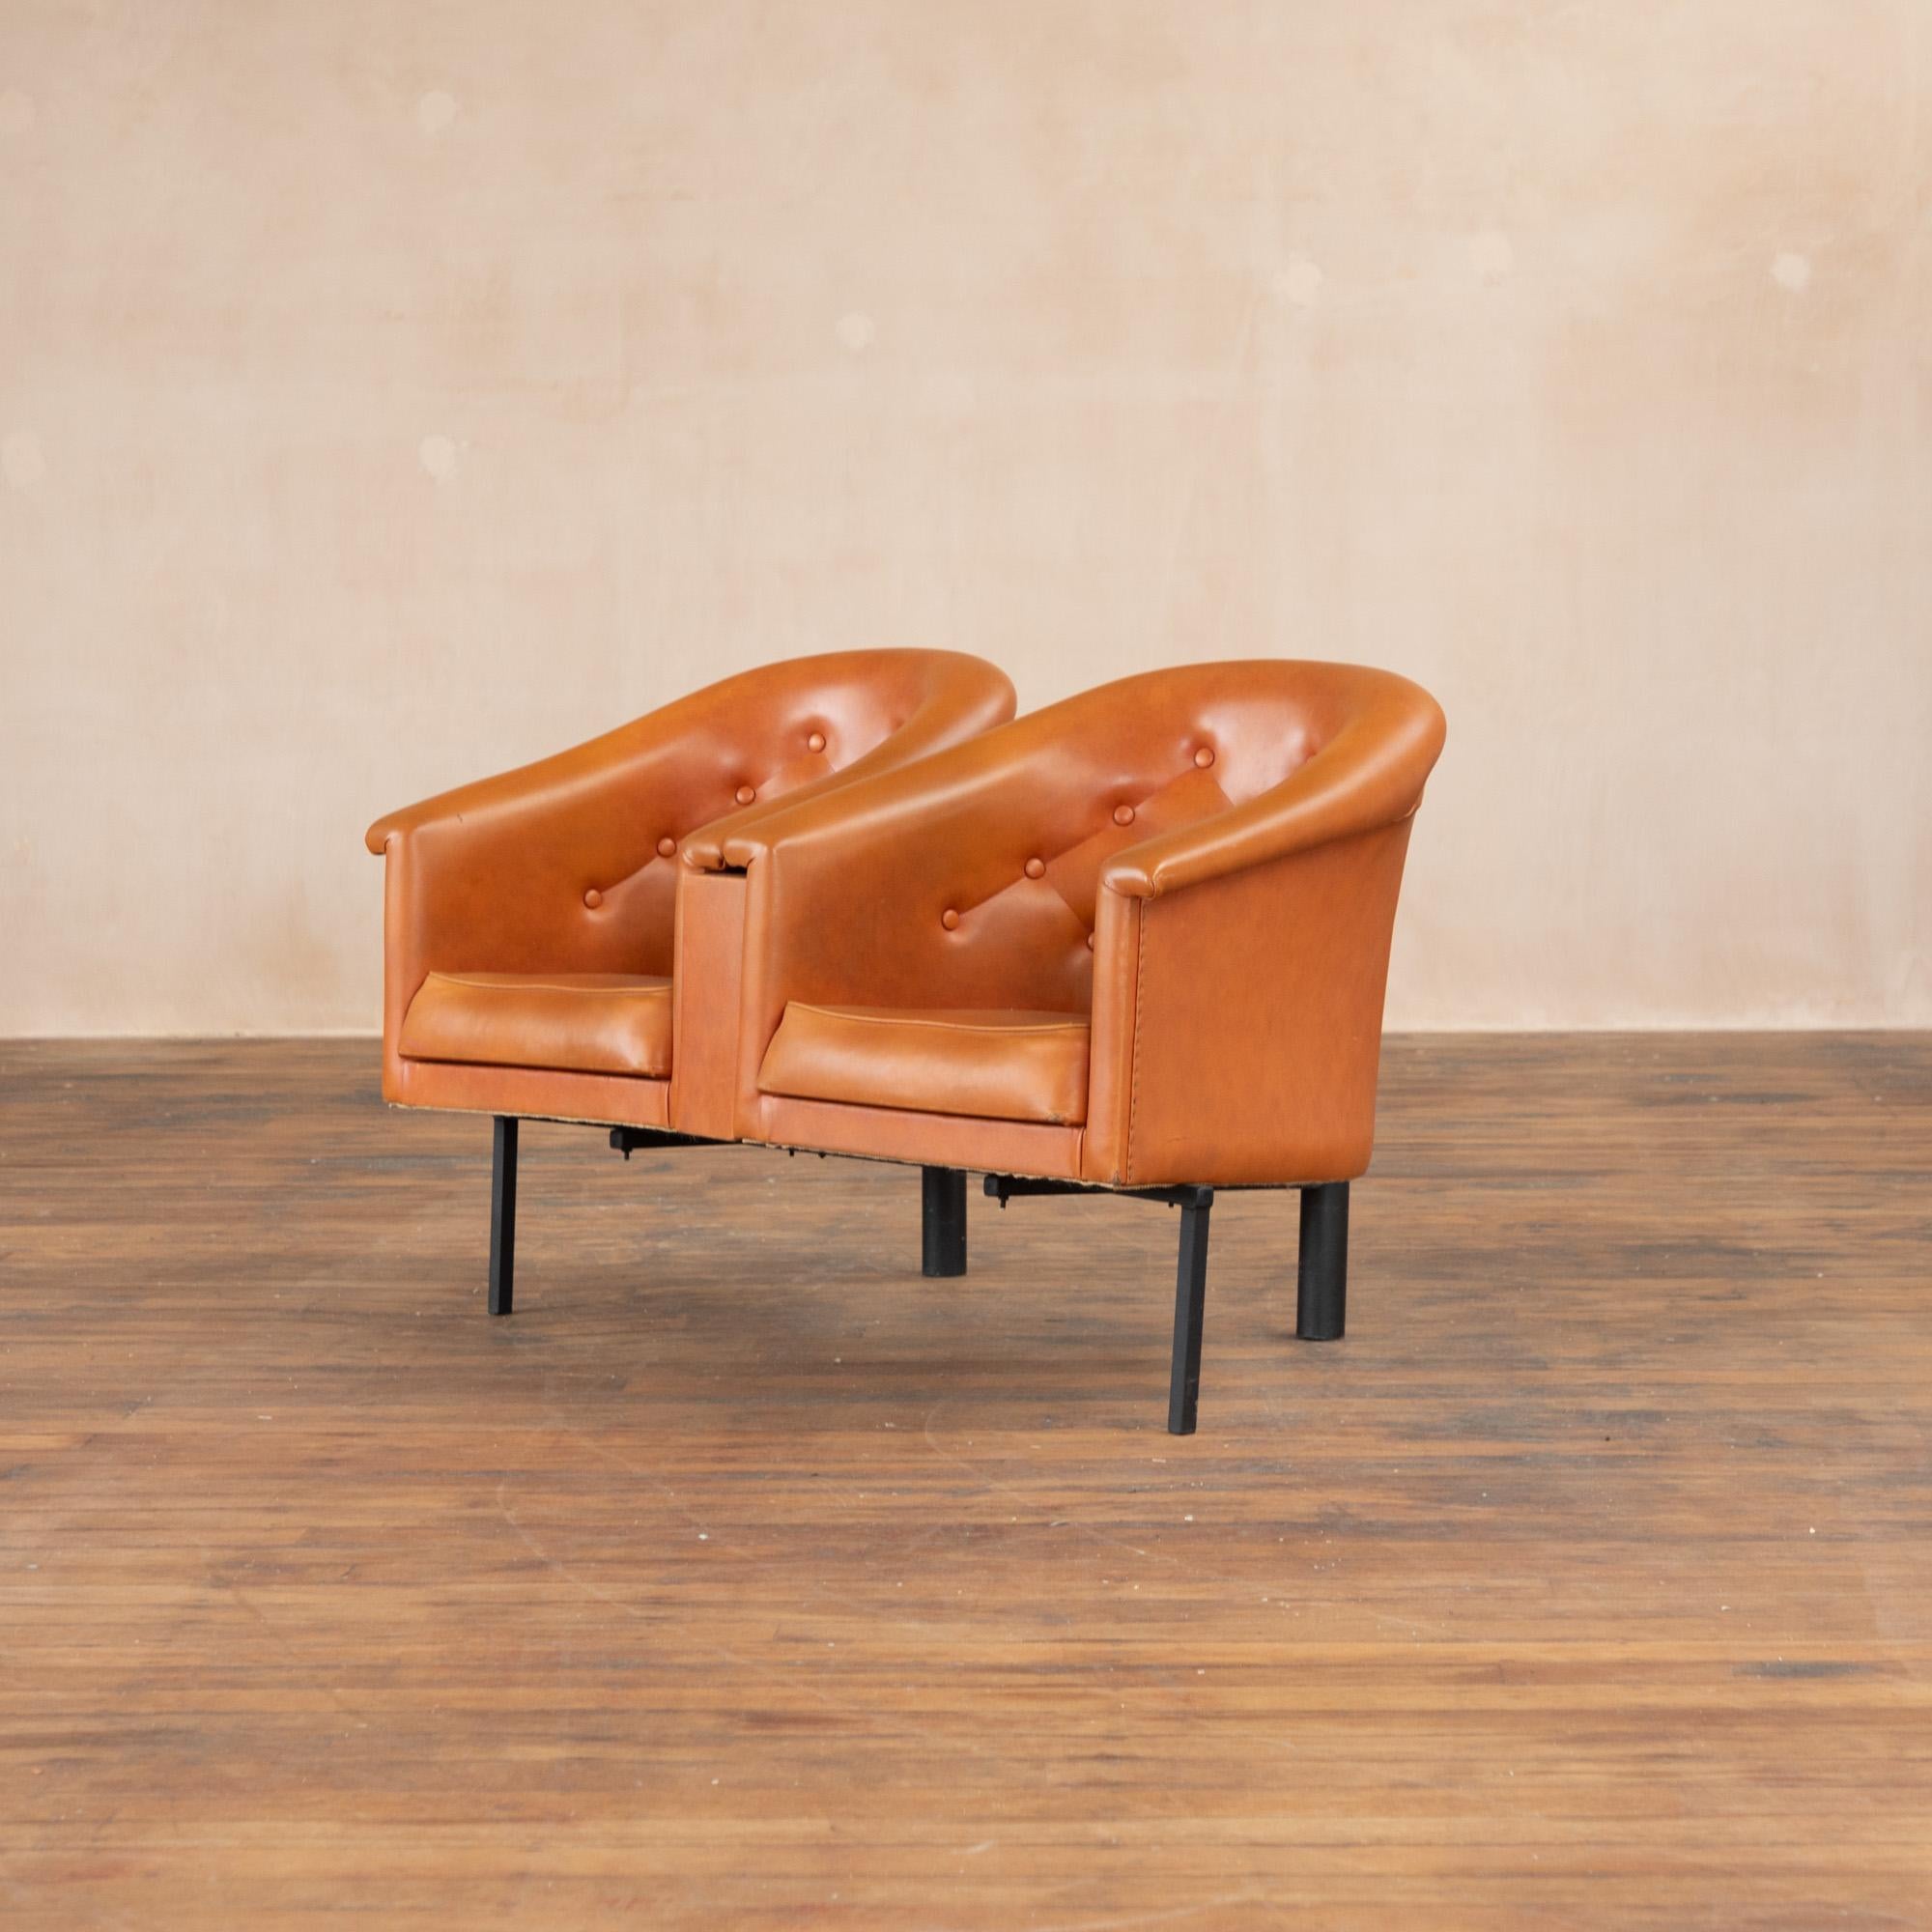 Das süßeste Set von  Wannenstühle aus den 1960er Jahren aus einem Friseursalon im Vereinigten Königreich. Orangefarbenes Vinyl mit geknöpftem Rückenteil. Ideal für Flure oder Wartezimmer.
Vinyl ist lebendig und ist im Allgemeinen in gutem Zustand